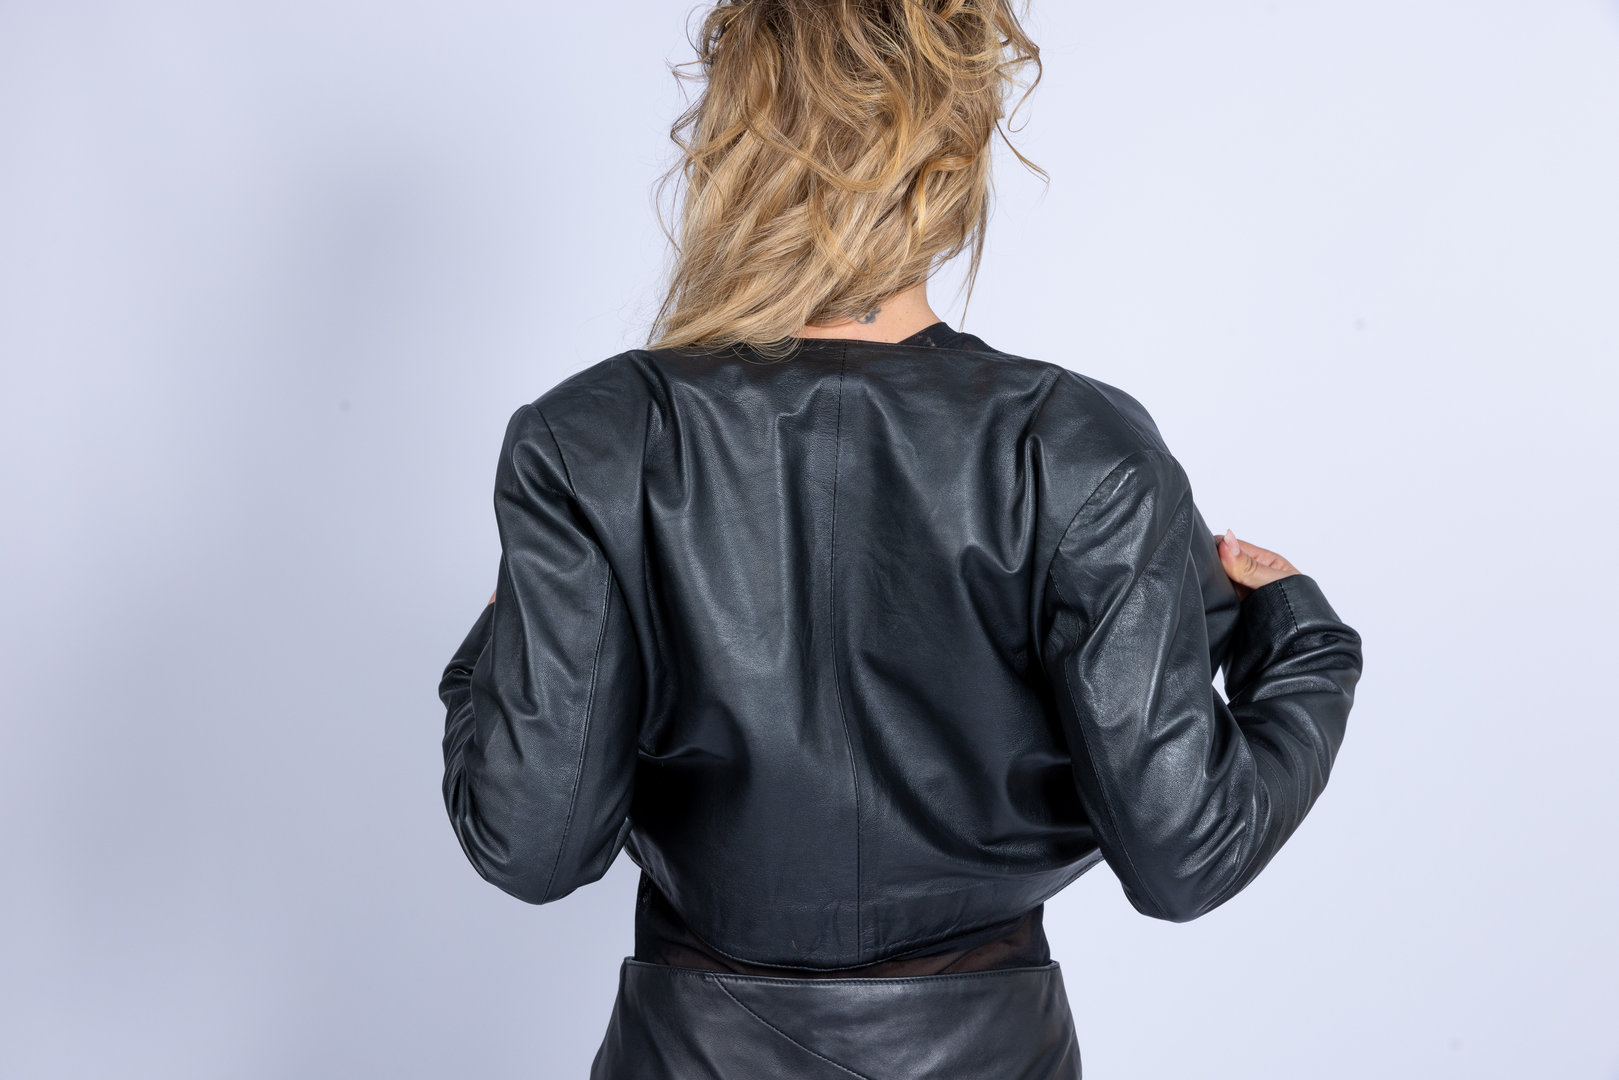 Leather jacket bolero in GENUINE LEATHER elegant black